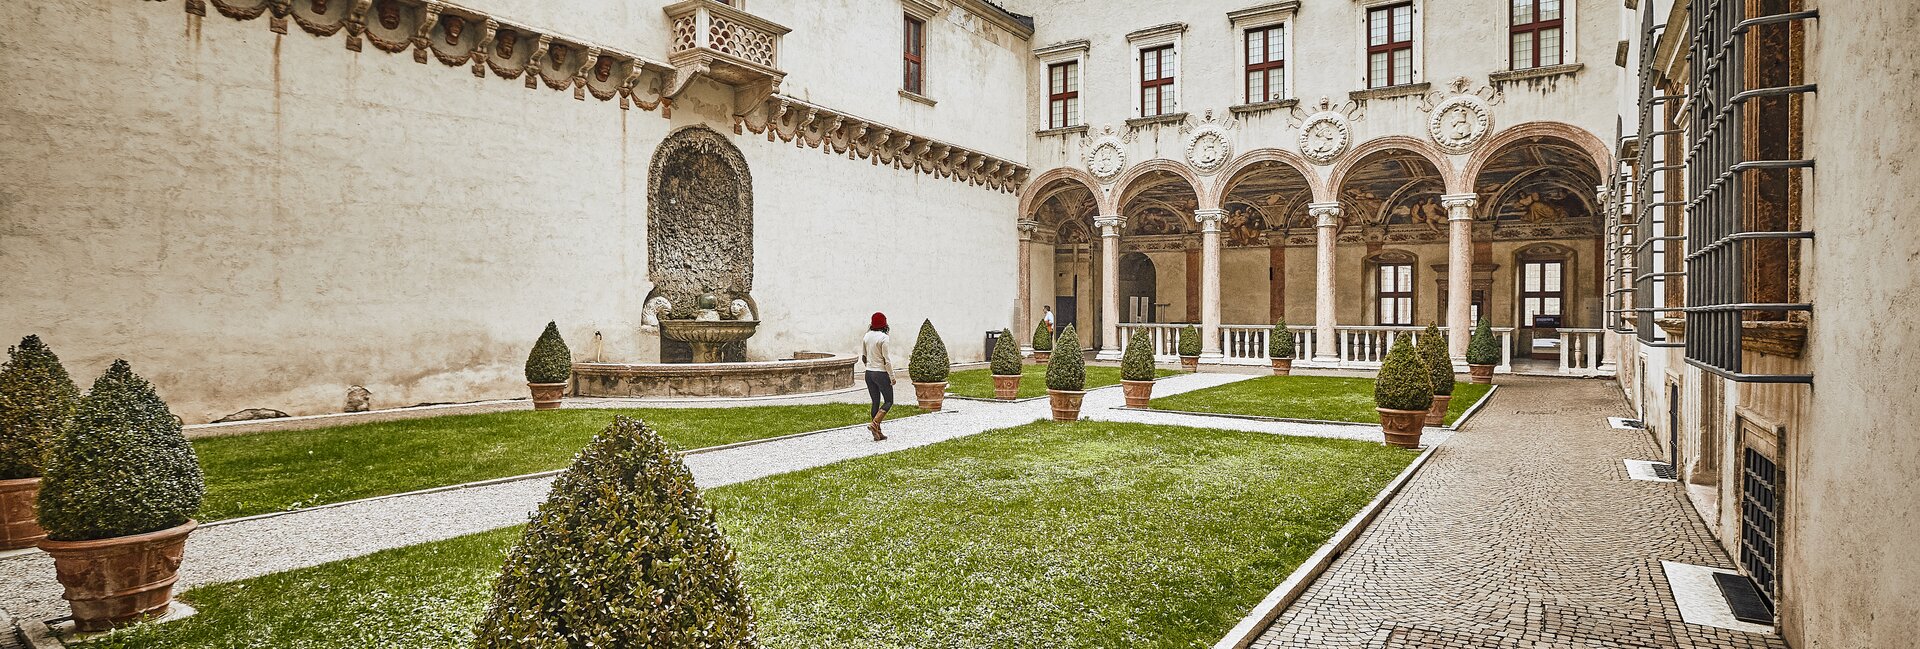 Valle dell'Adige - Trento - Castello del Buonconsiglio
